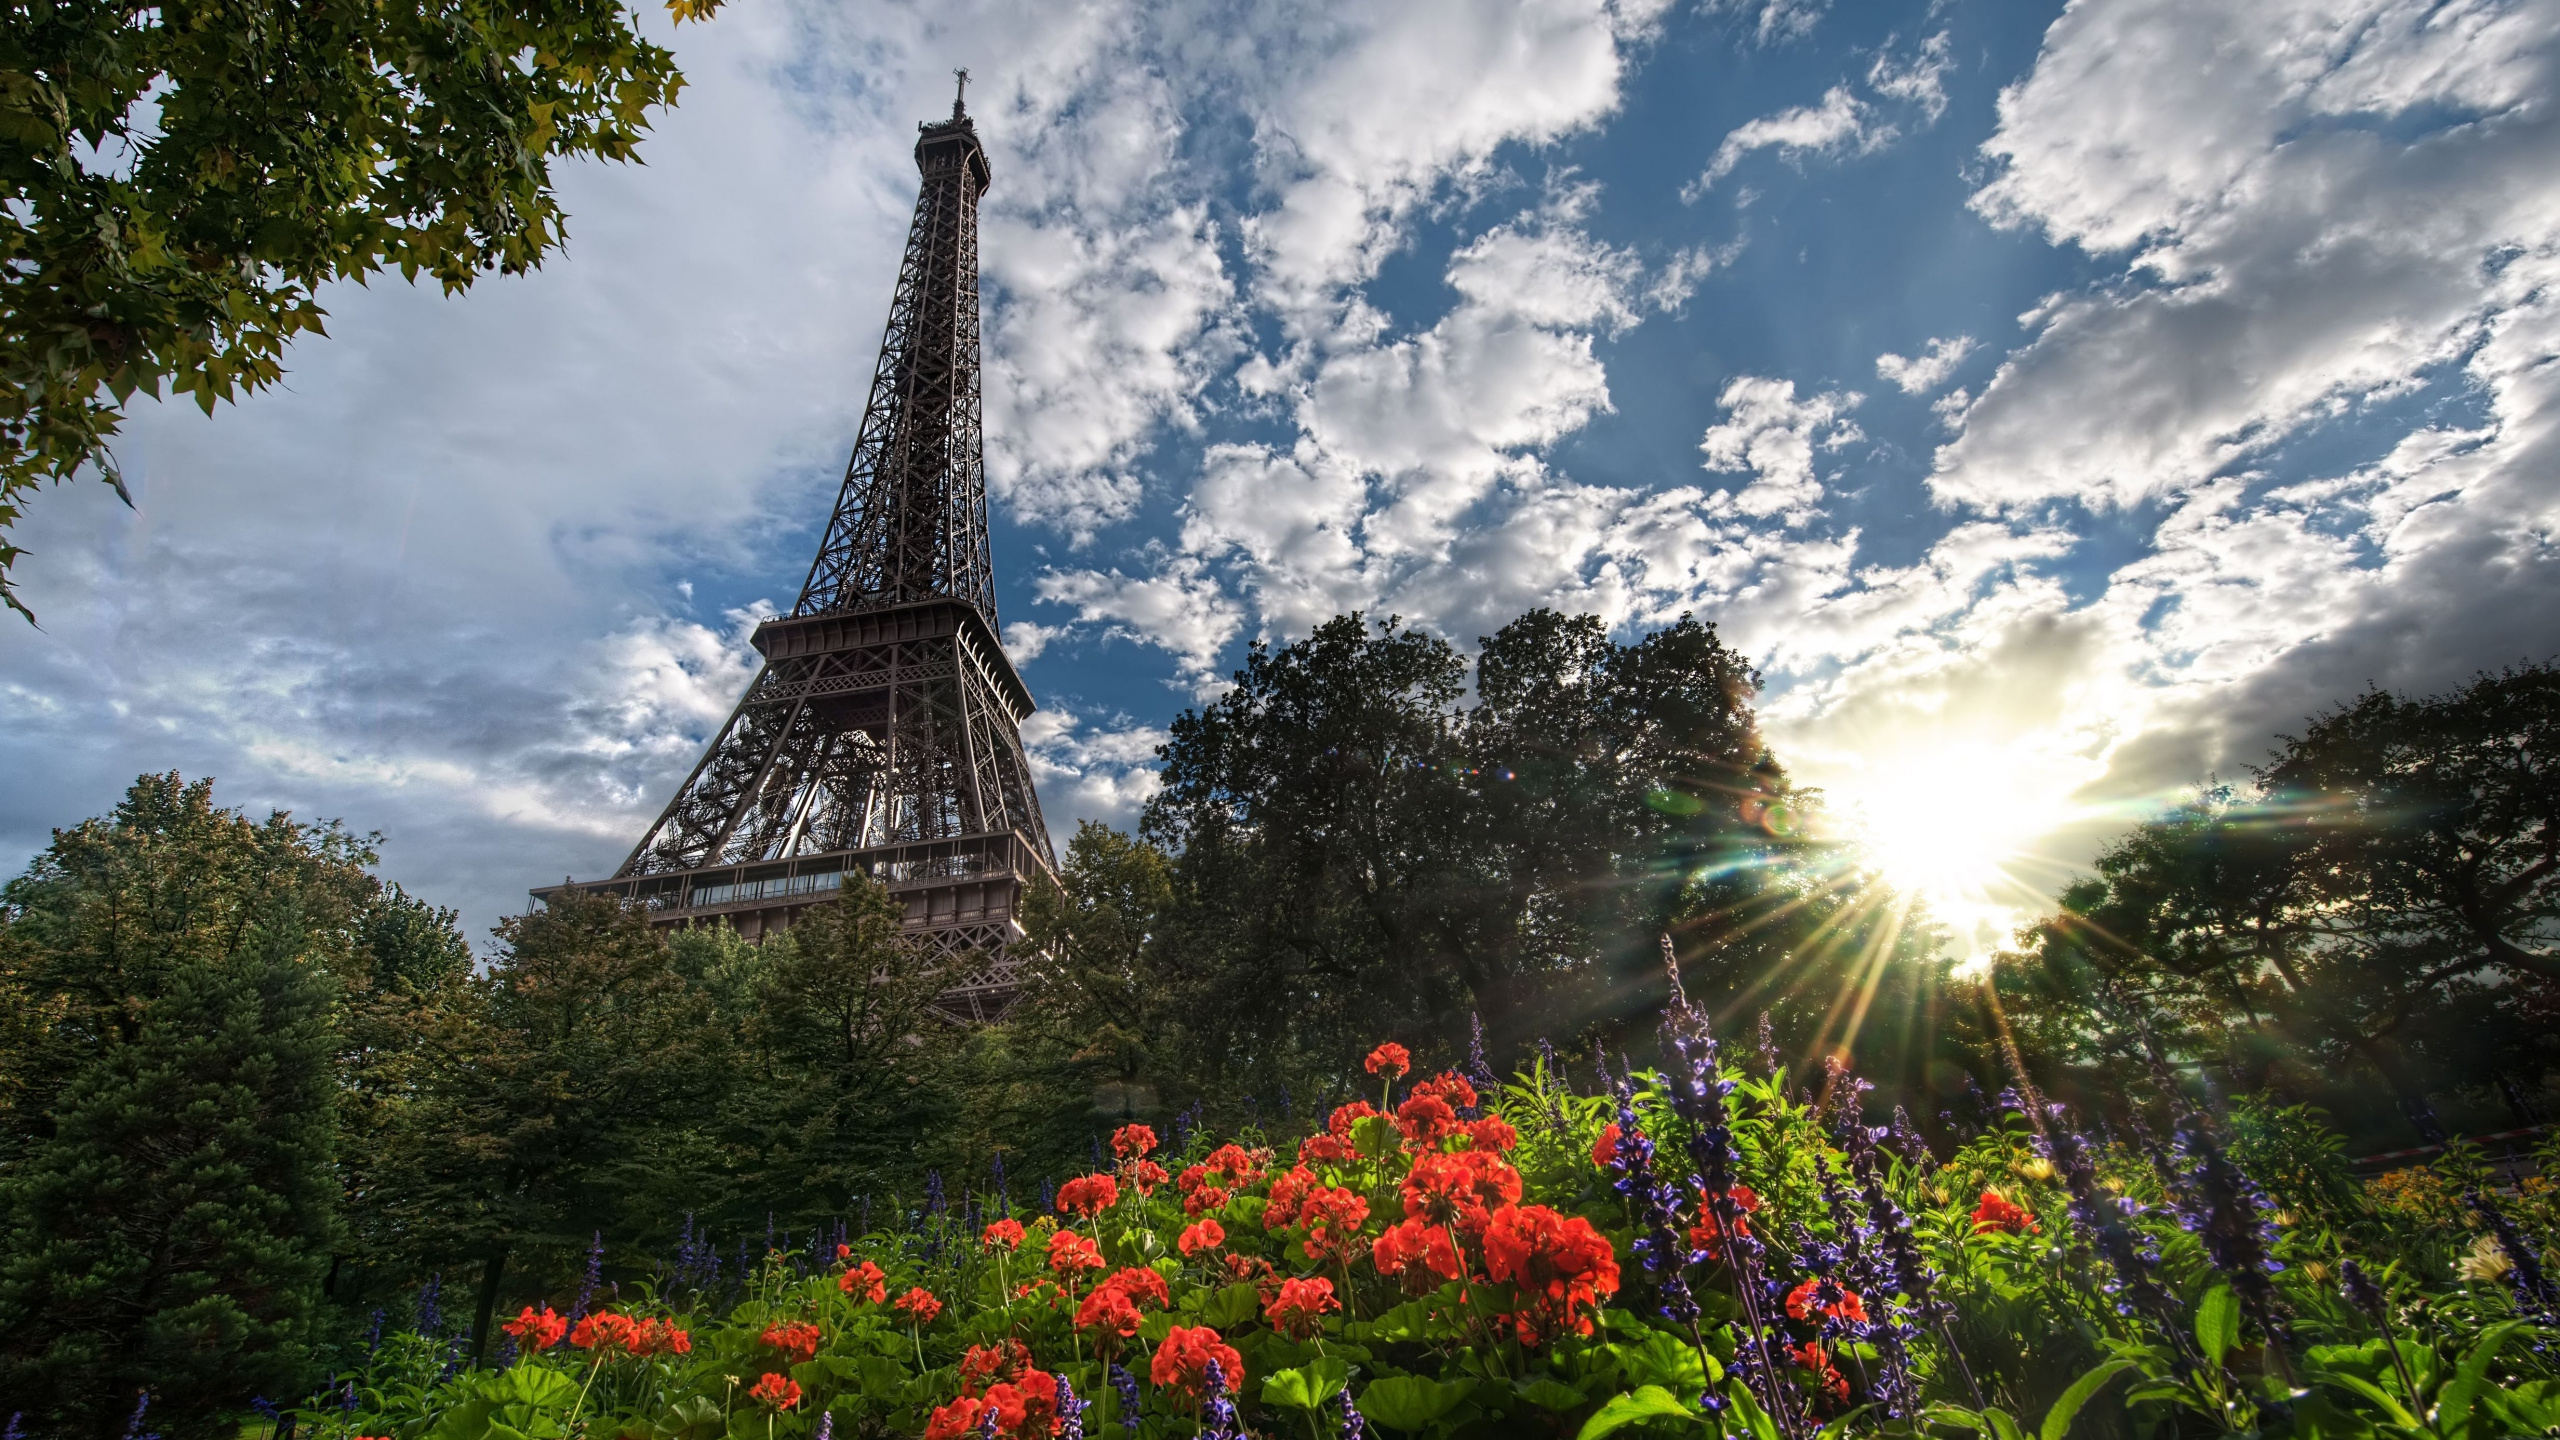 艾菲尔铁塔, 性质, 里程碑, 巴黎的埃菲尔铁塔, 天空 壁纸 2560x1440 允许